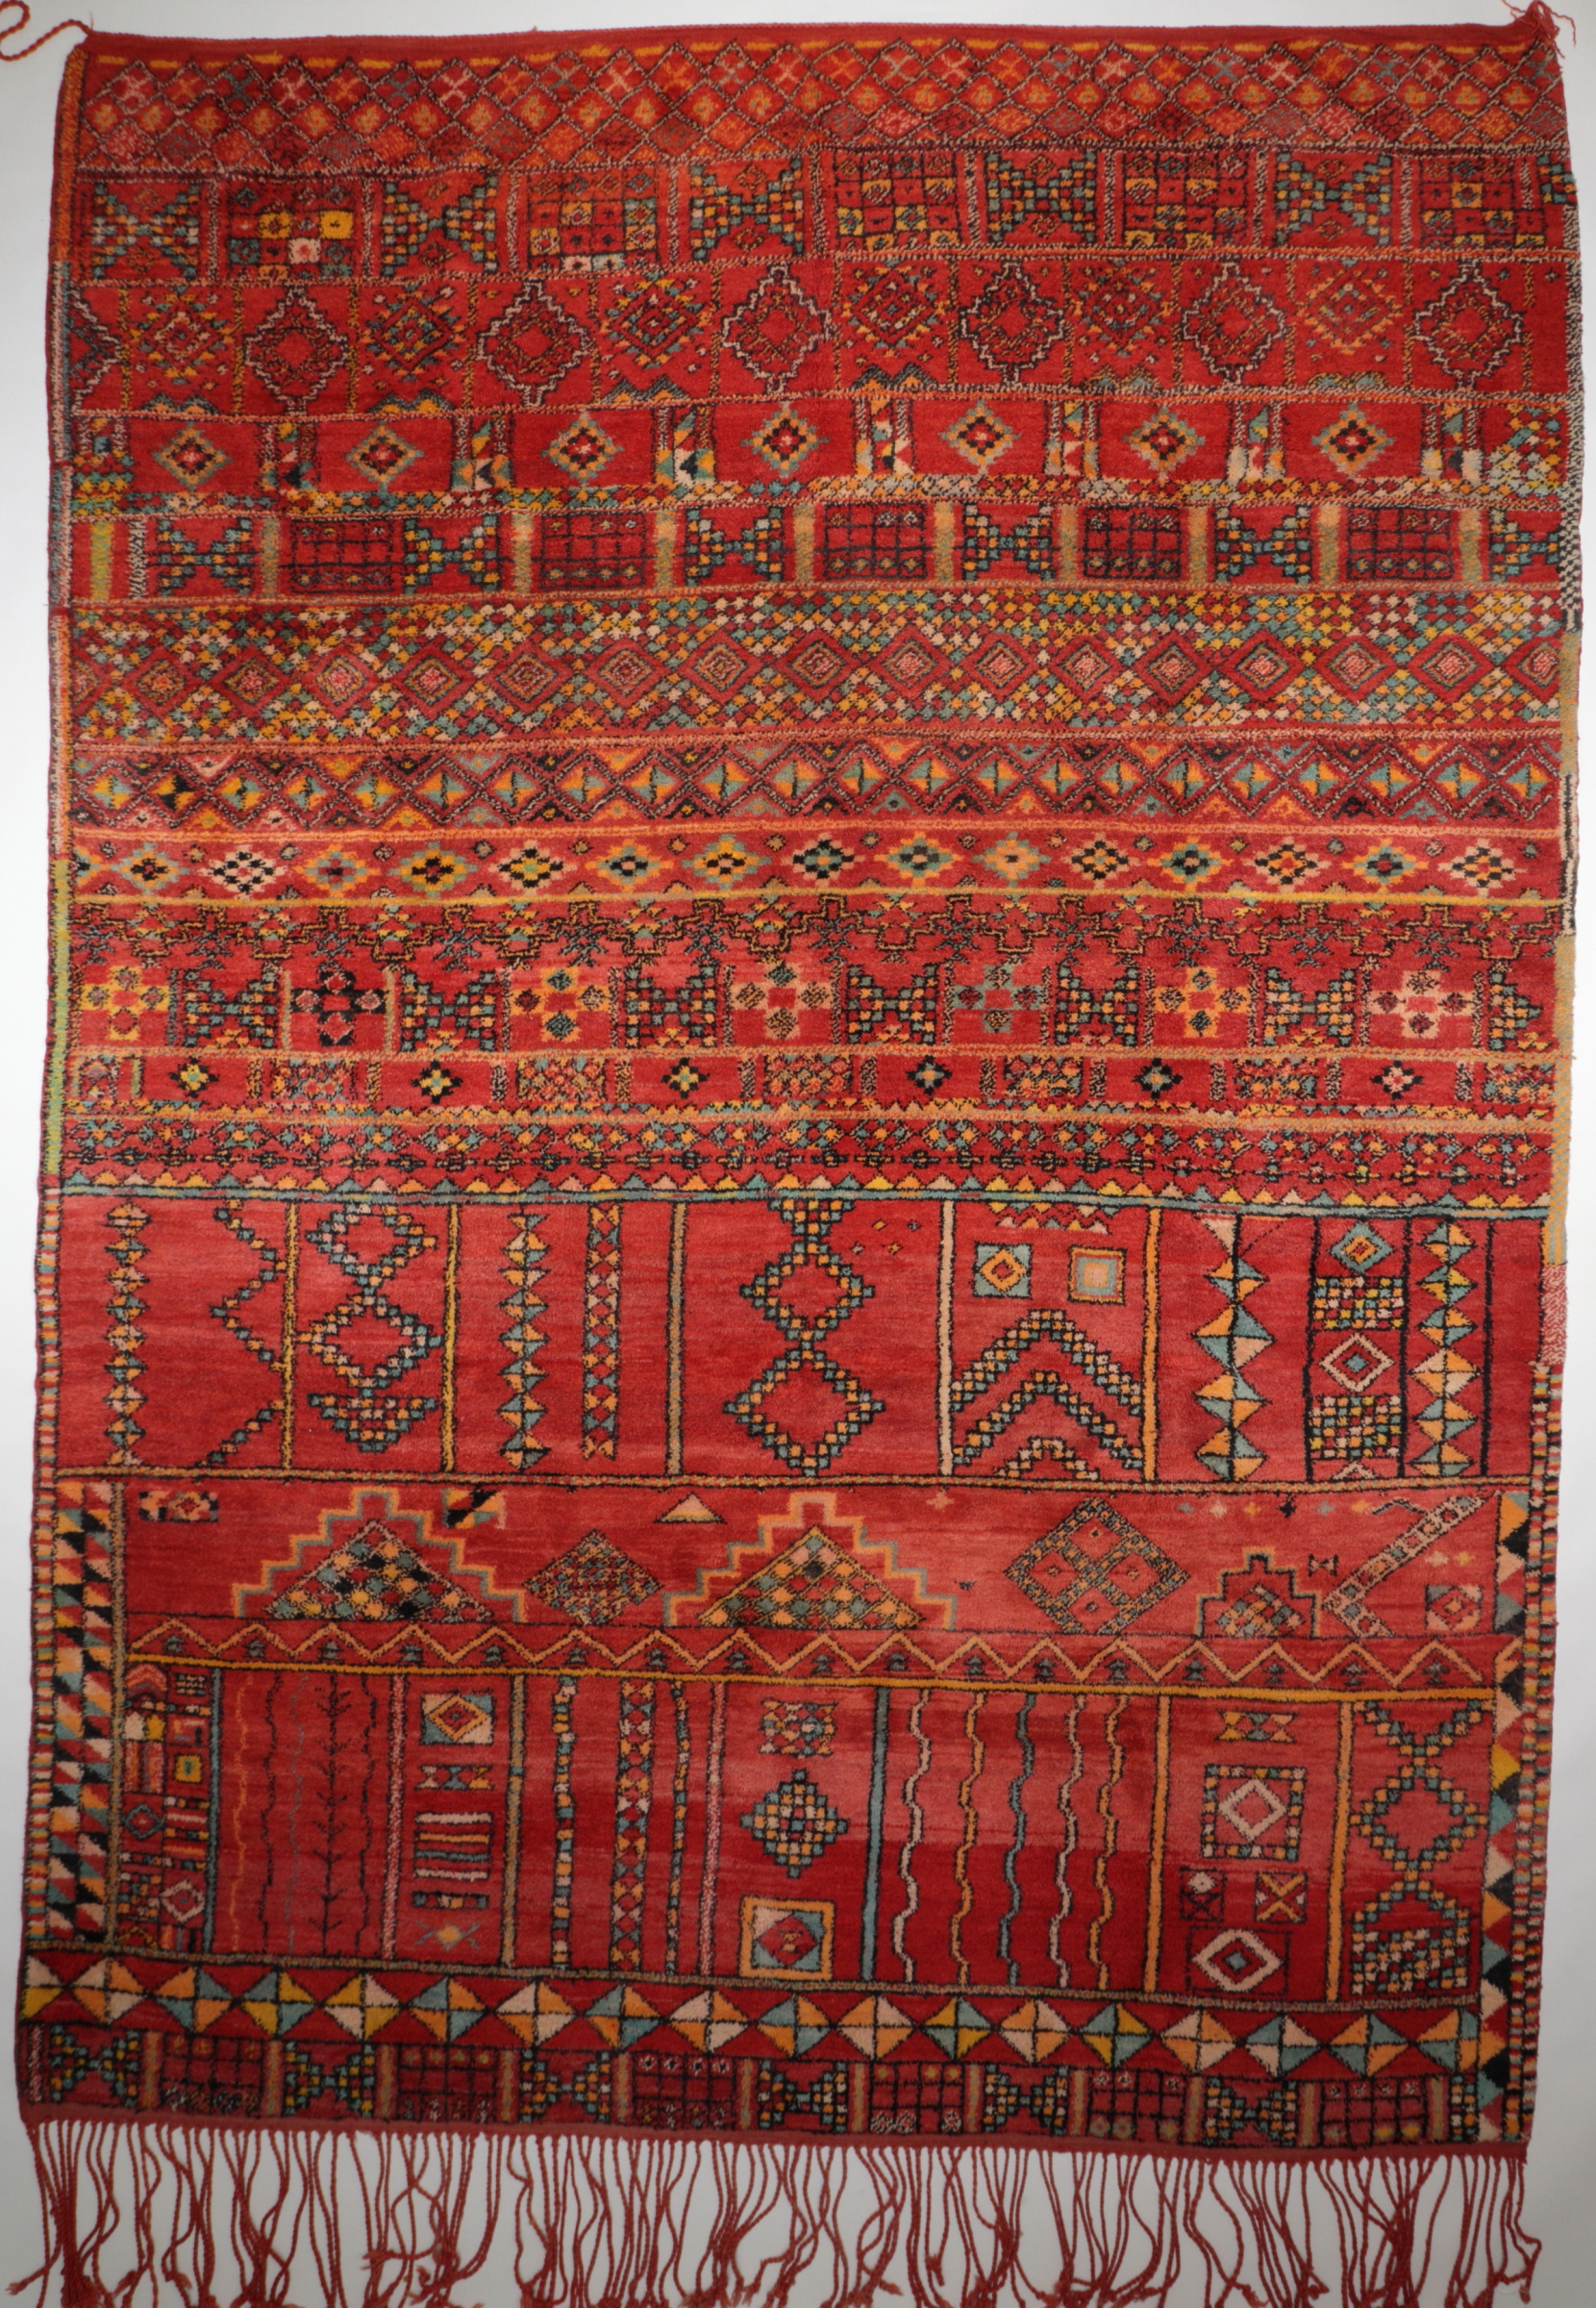 Berberteppich Mrirt aus den 60/70er Jahren, Original aus Marokko, handgeknüpft aus Schurwolle, mehrfarbig, rot, Draufsicht